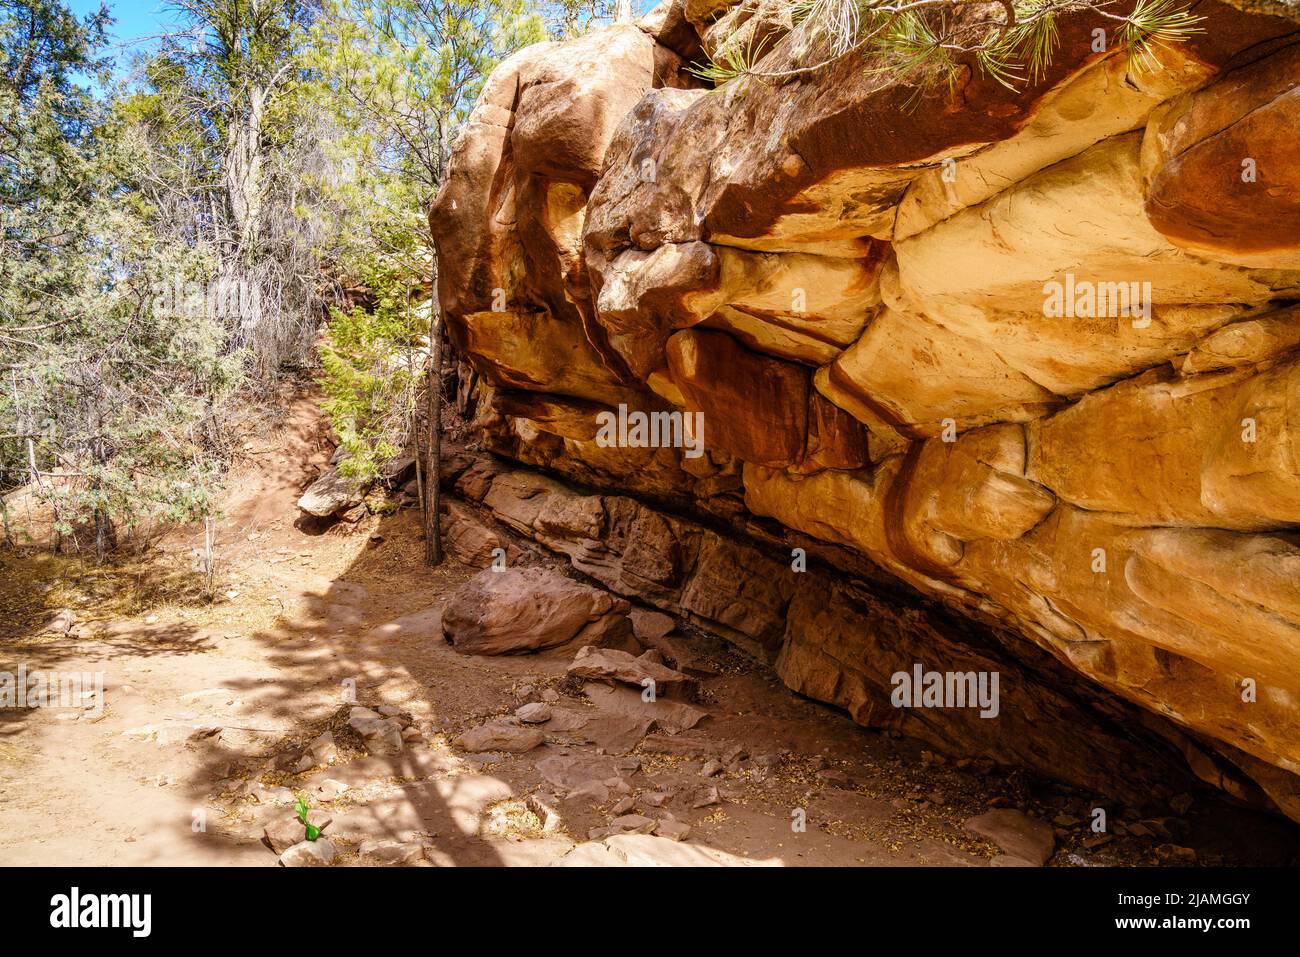 Hiking trail in Grasshopper Canyon near Santa Fe, New Mexico Stock Photo